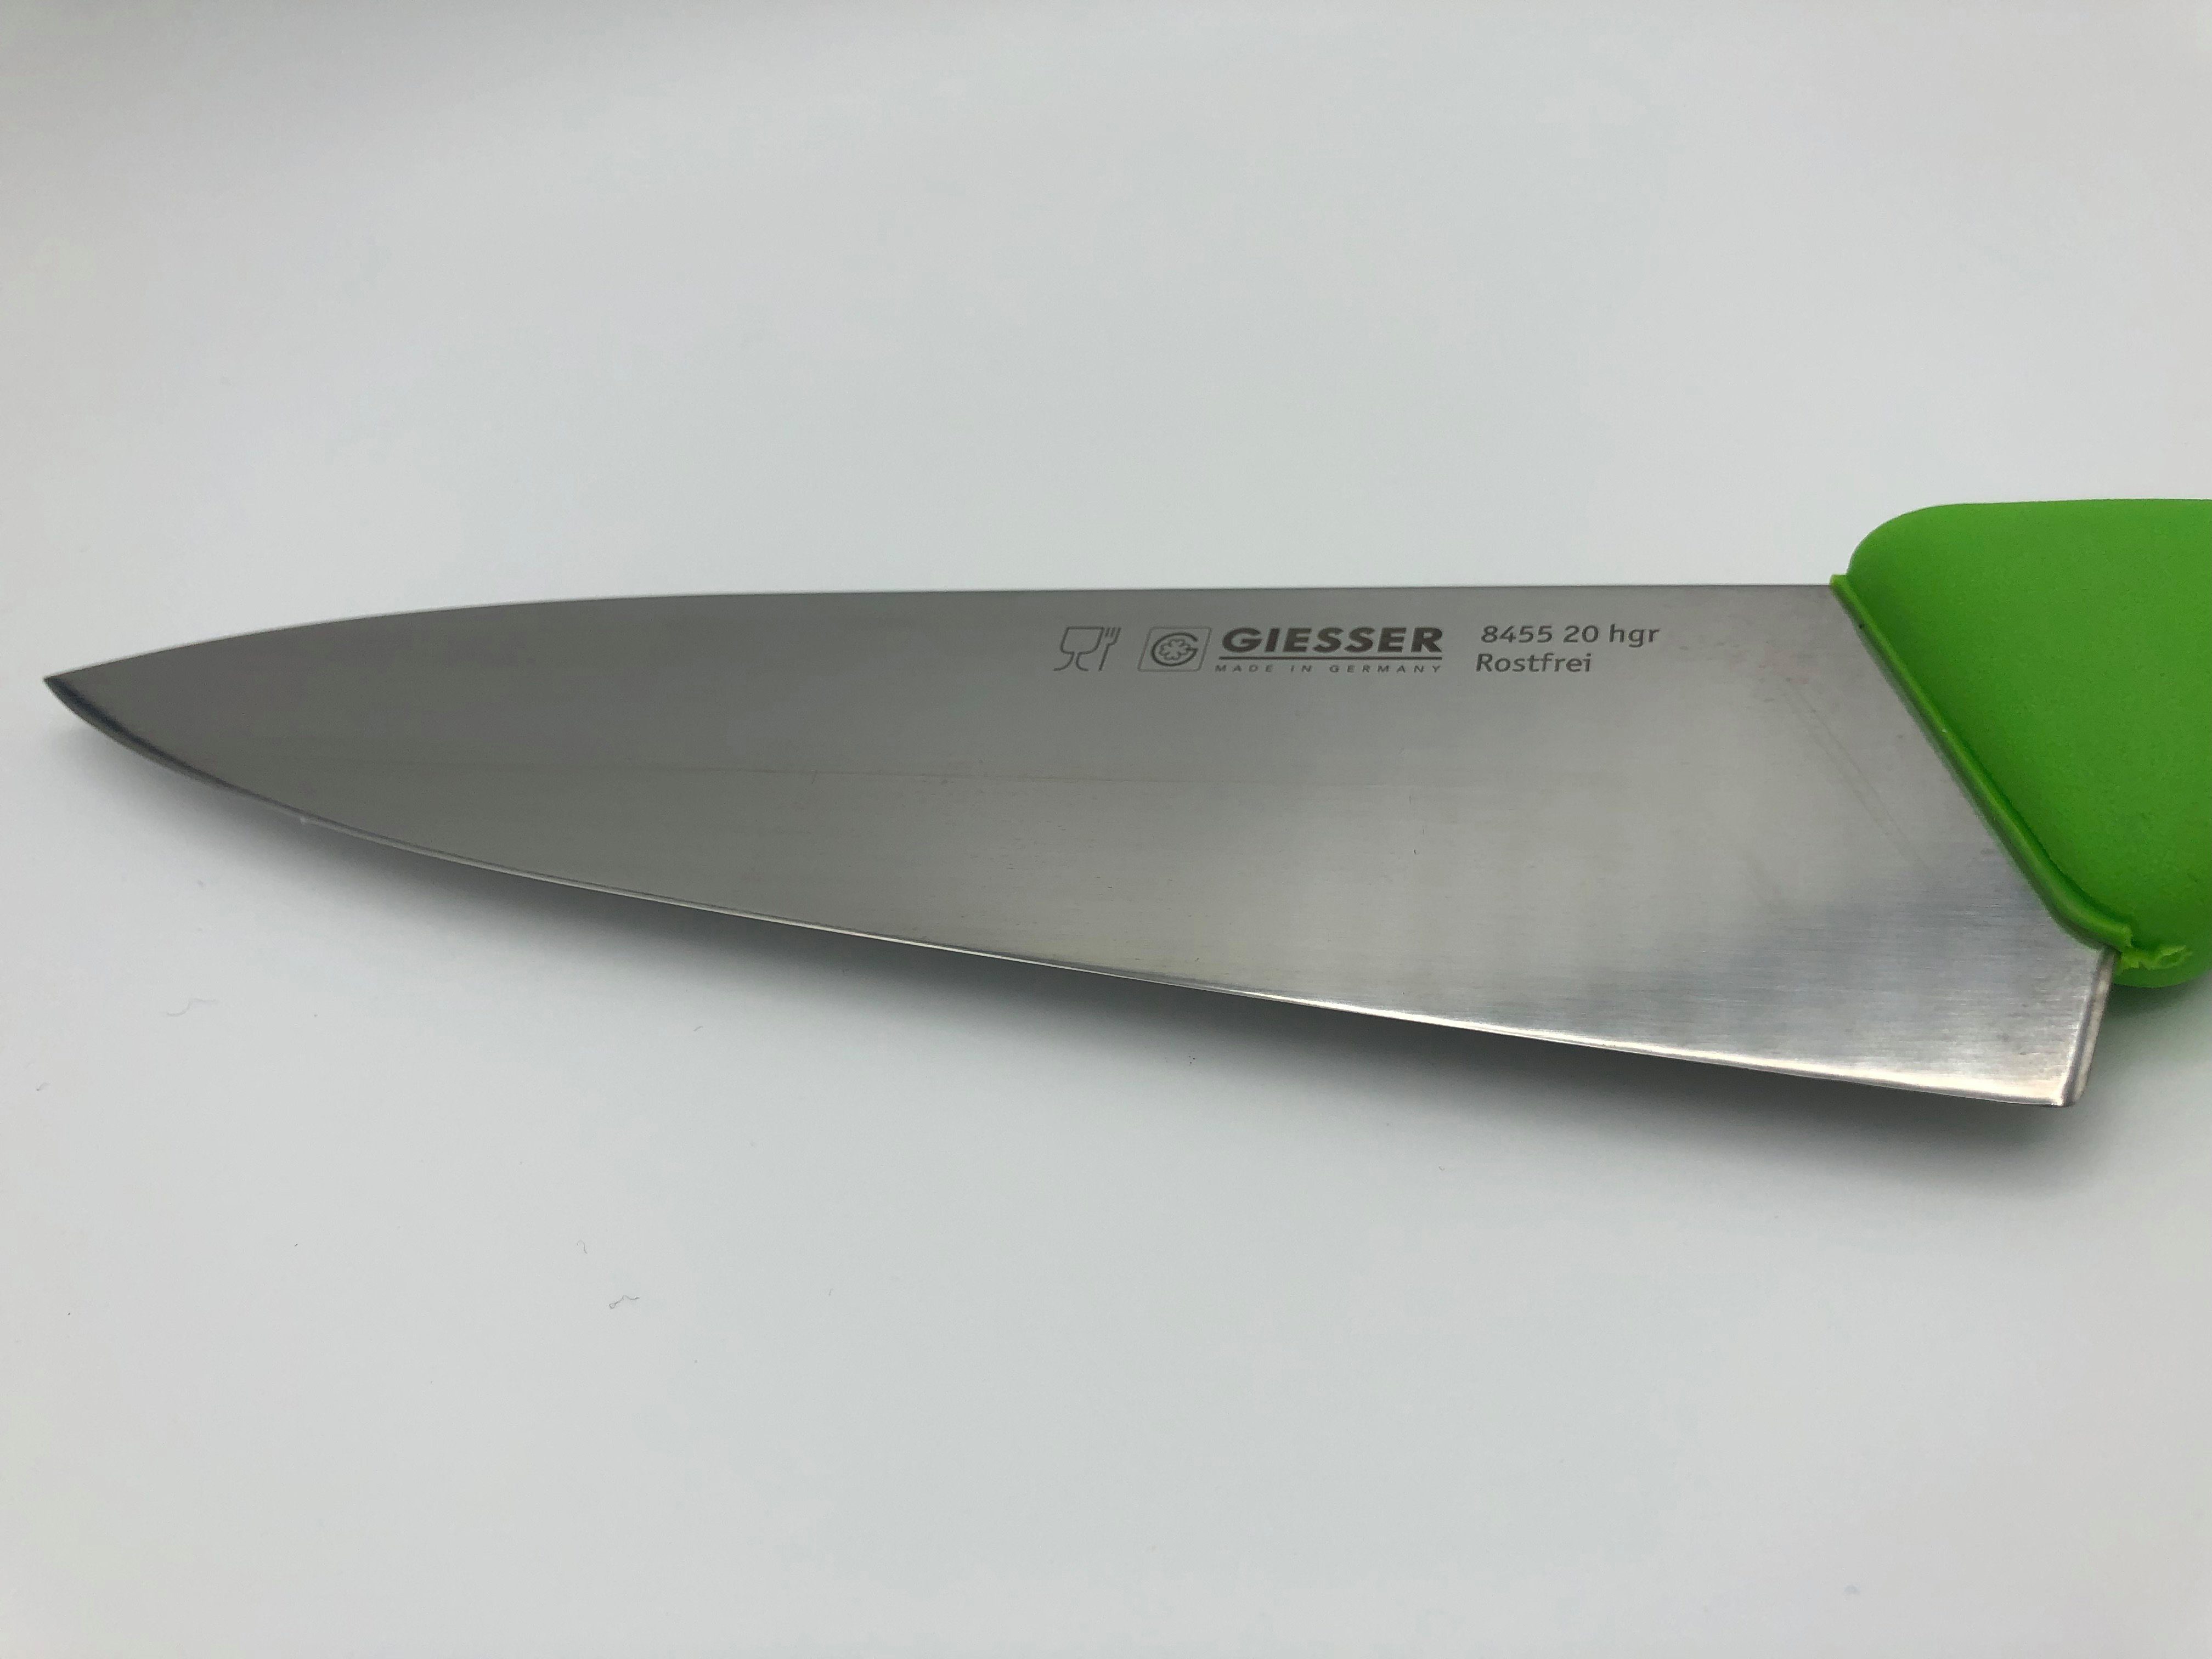 Kochmesser Messer 8455, Küchenmesser hellgrün scharf, Handabzug, Giesser jede Form, Ideal Küche Rostfrei, breit breite für